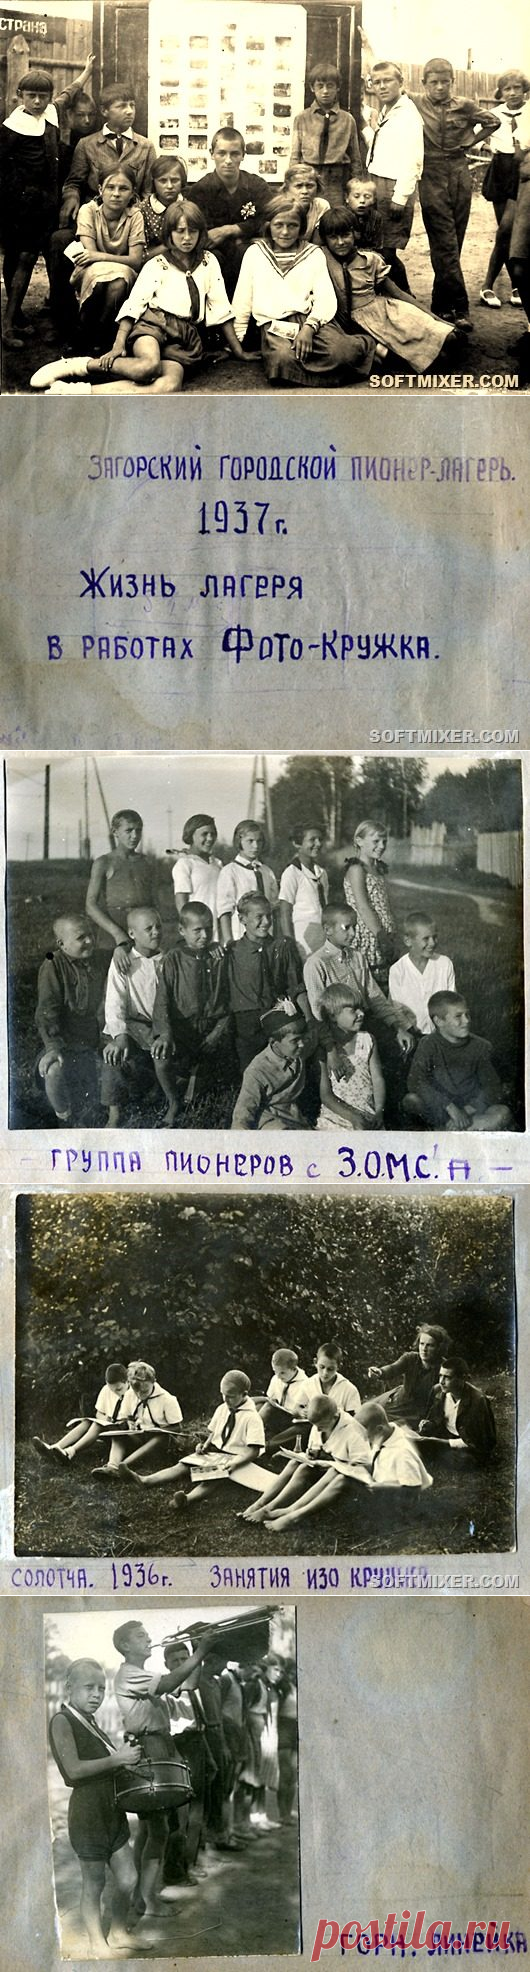 Советский пионерский лагерь 1937 года / Назад в СССР / Back in USSR